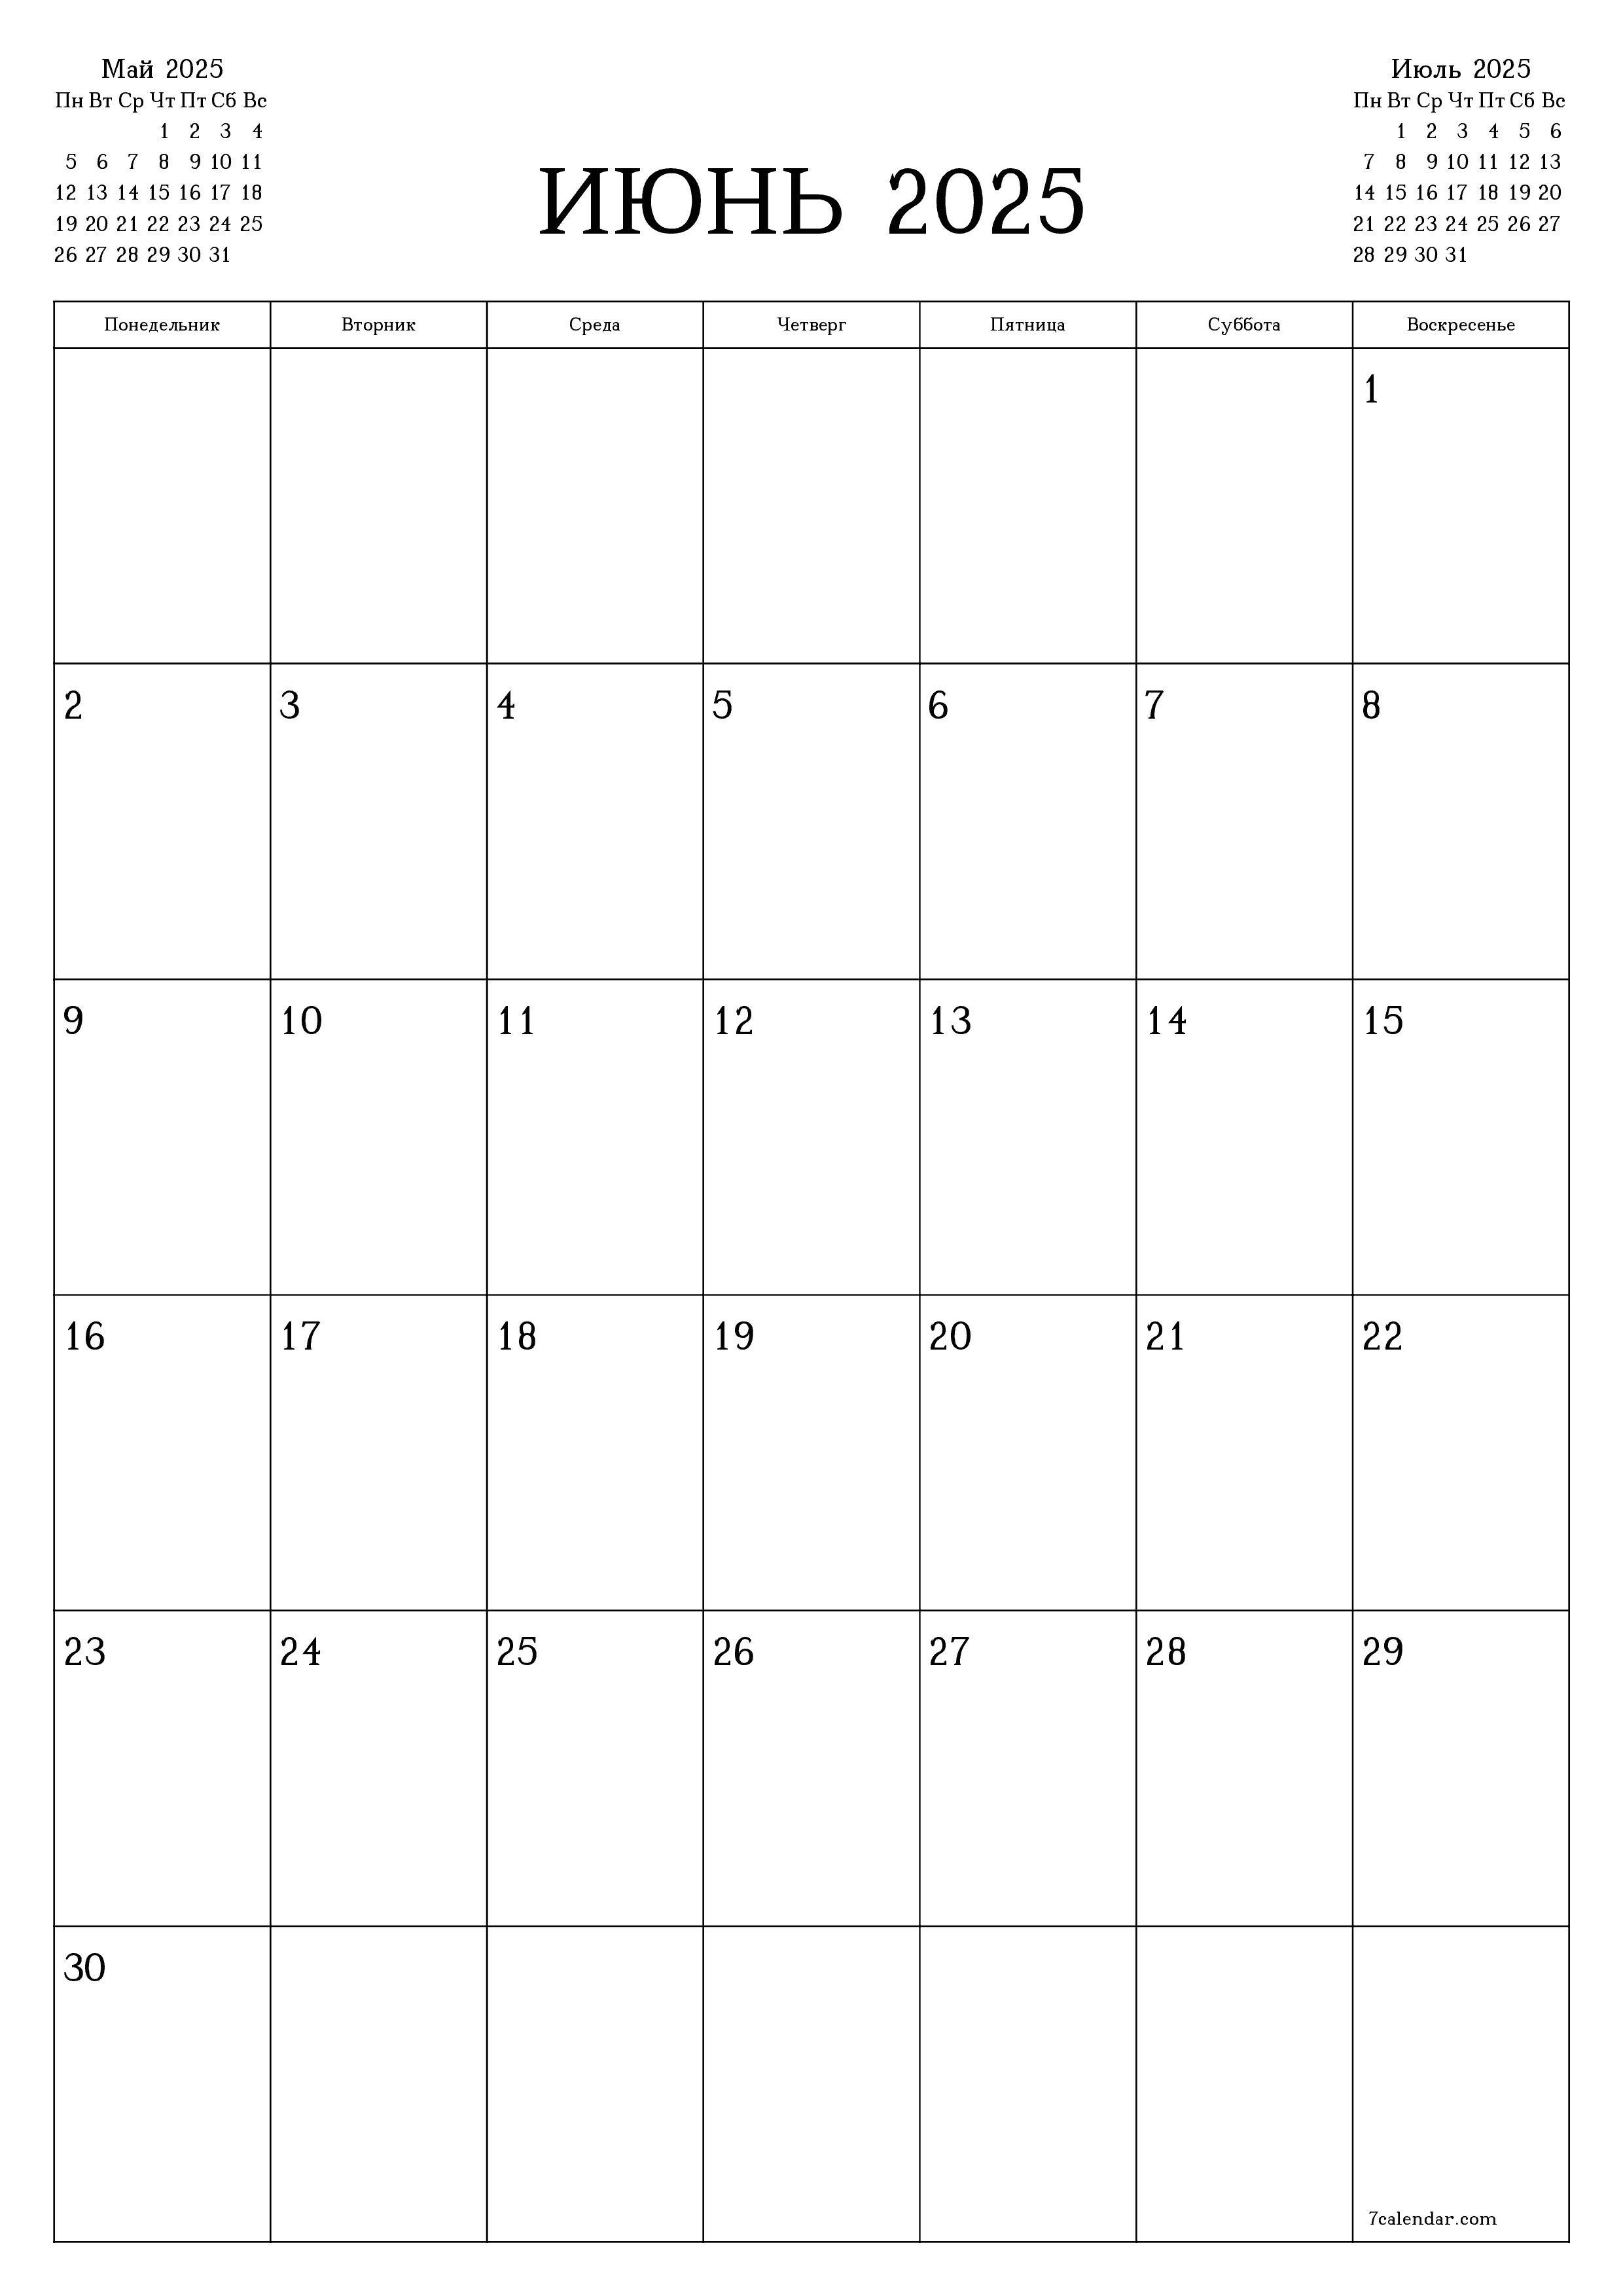 Пустой ежемесячный календарь-планер на месяц Июнь 2025